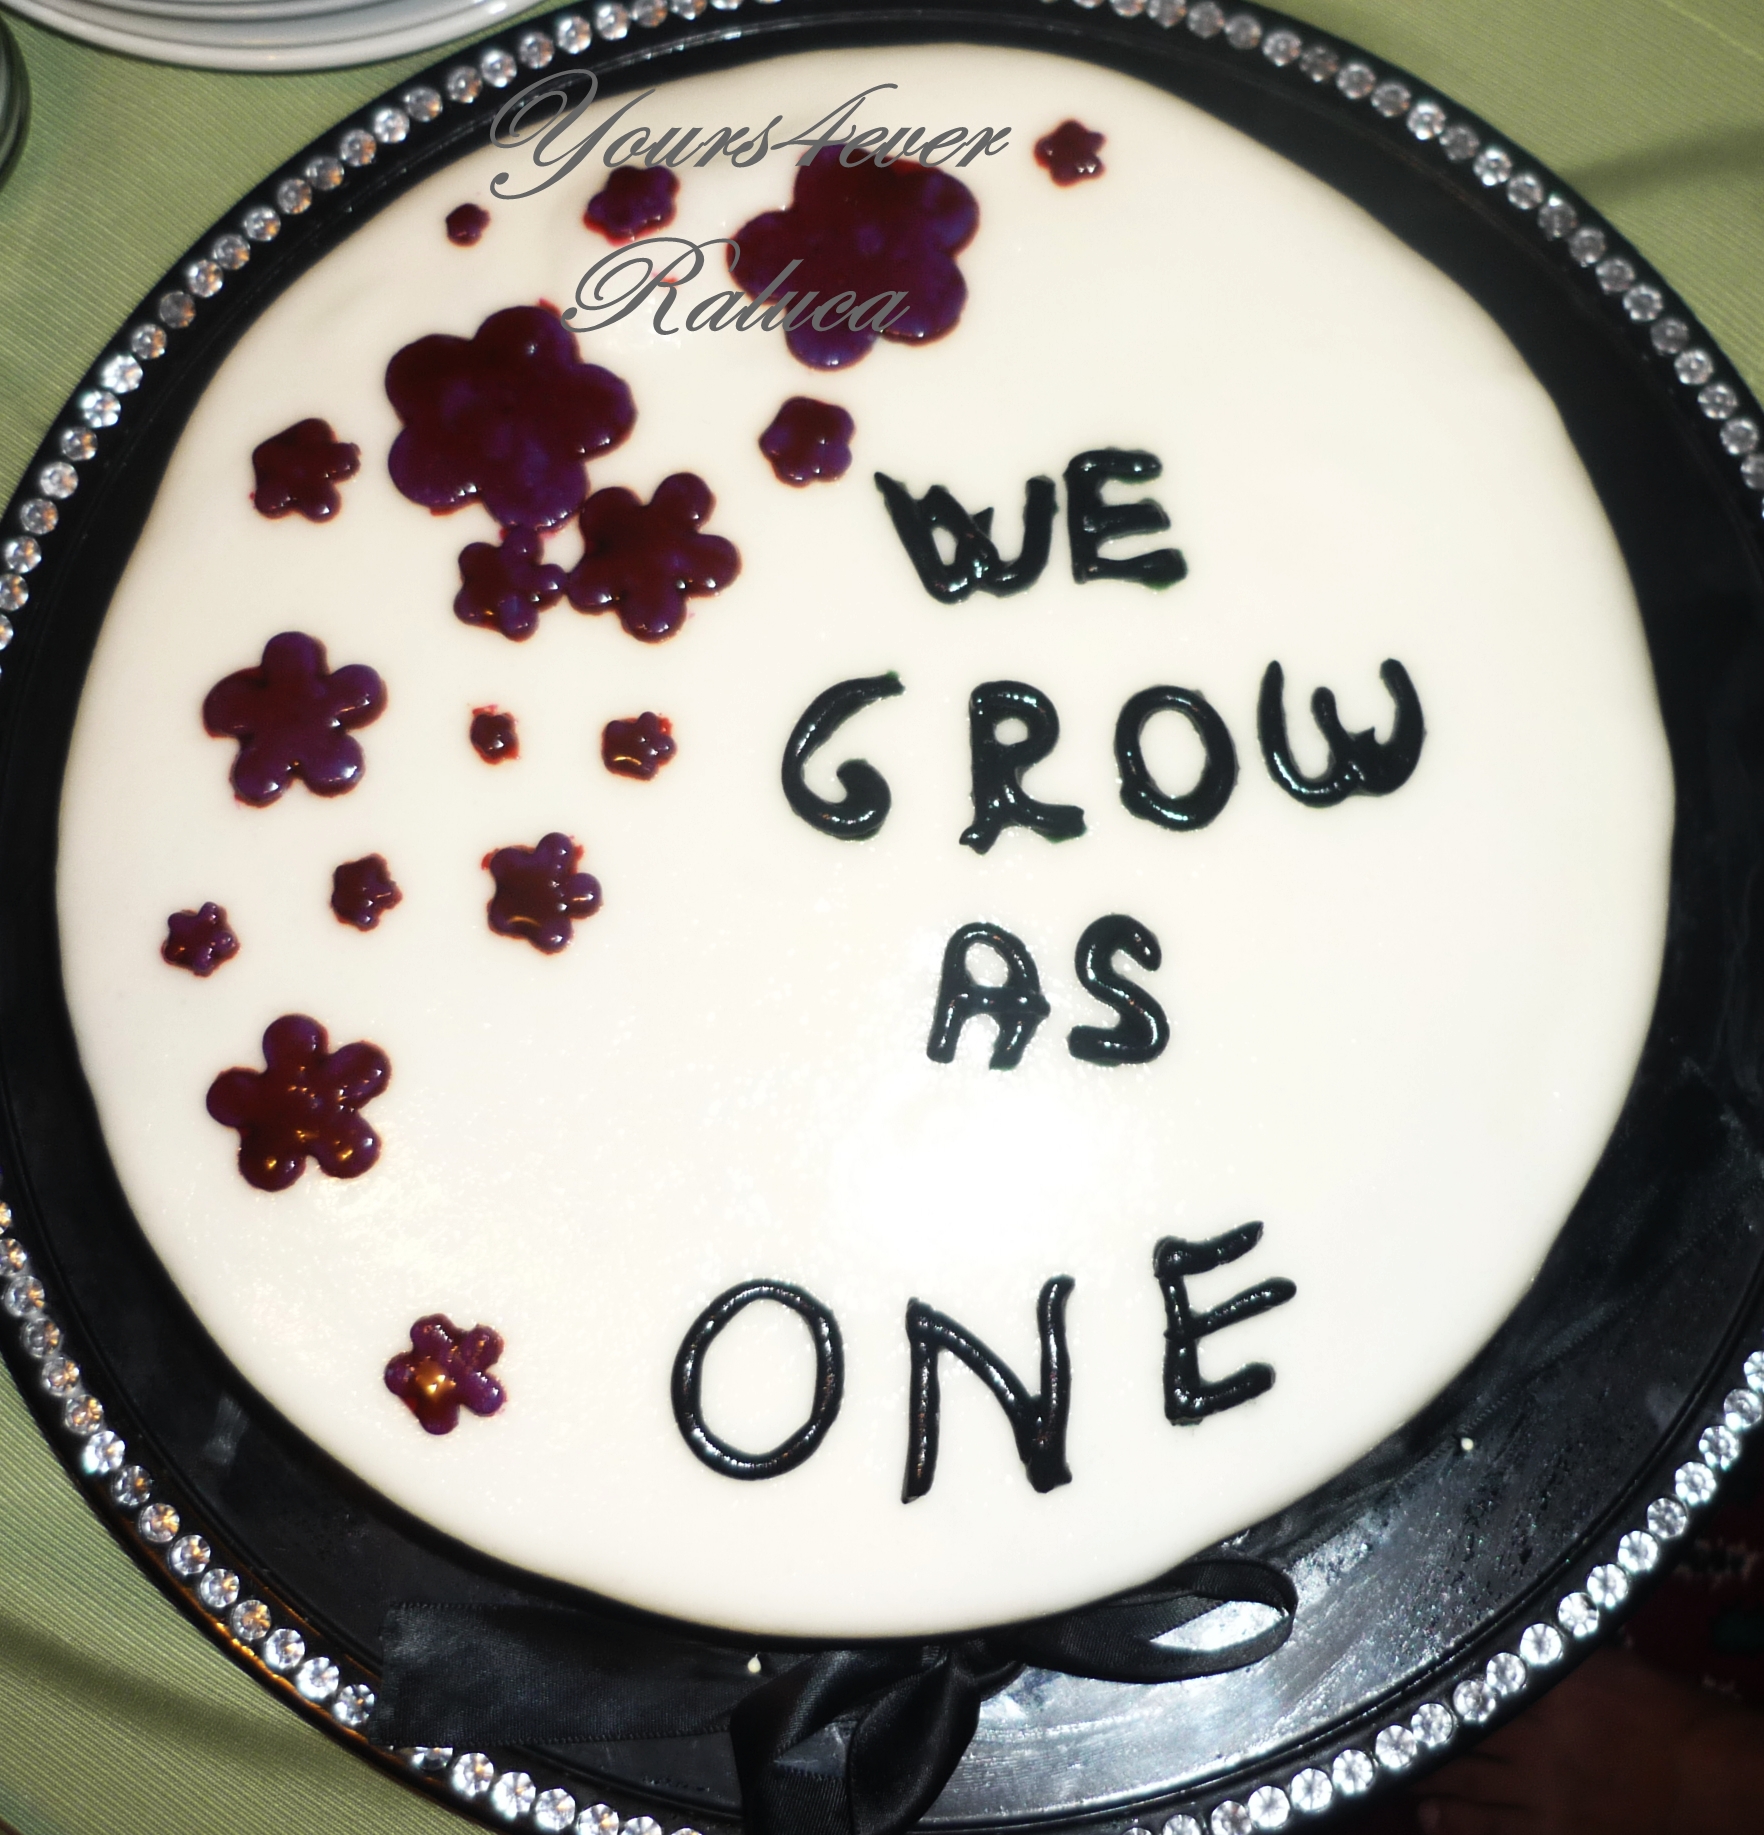 10 Year Work Anniversary Cake